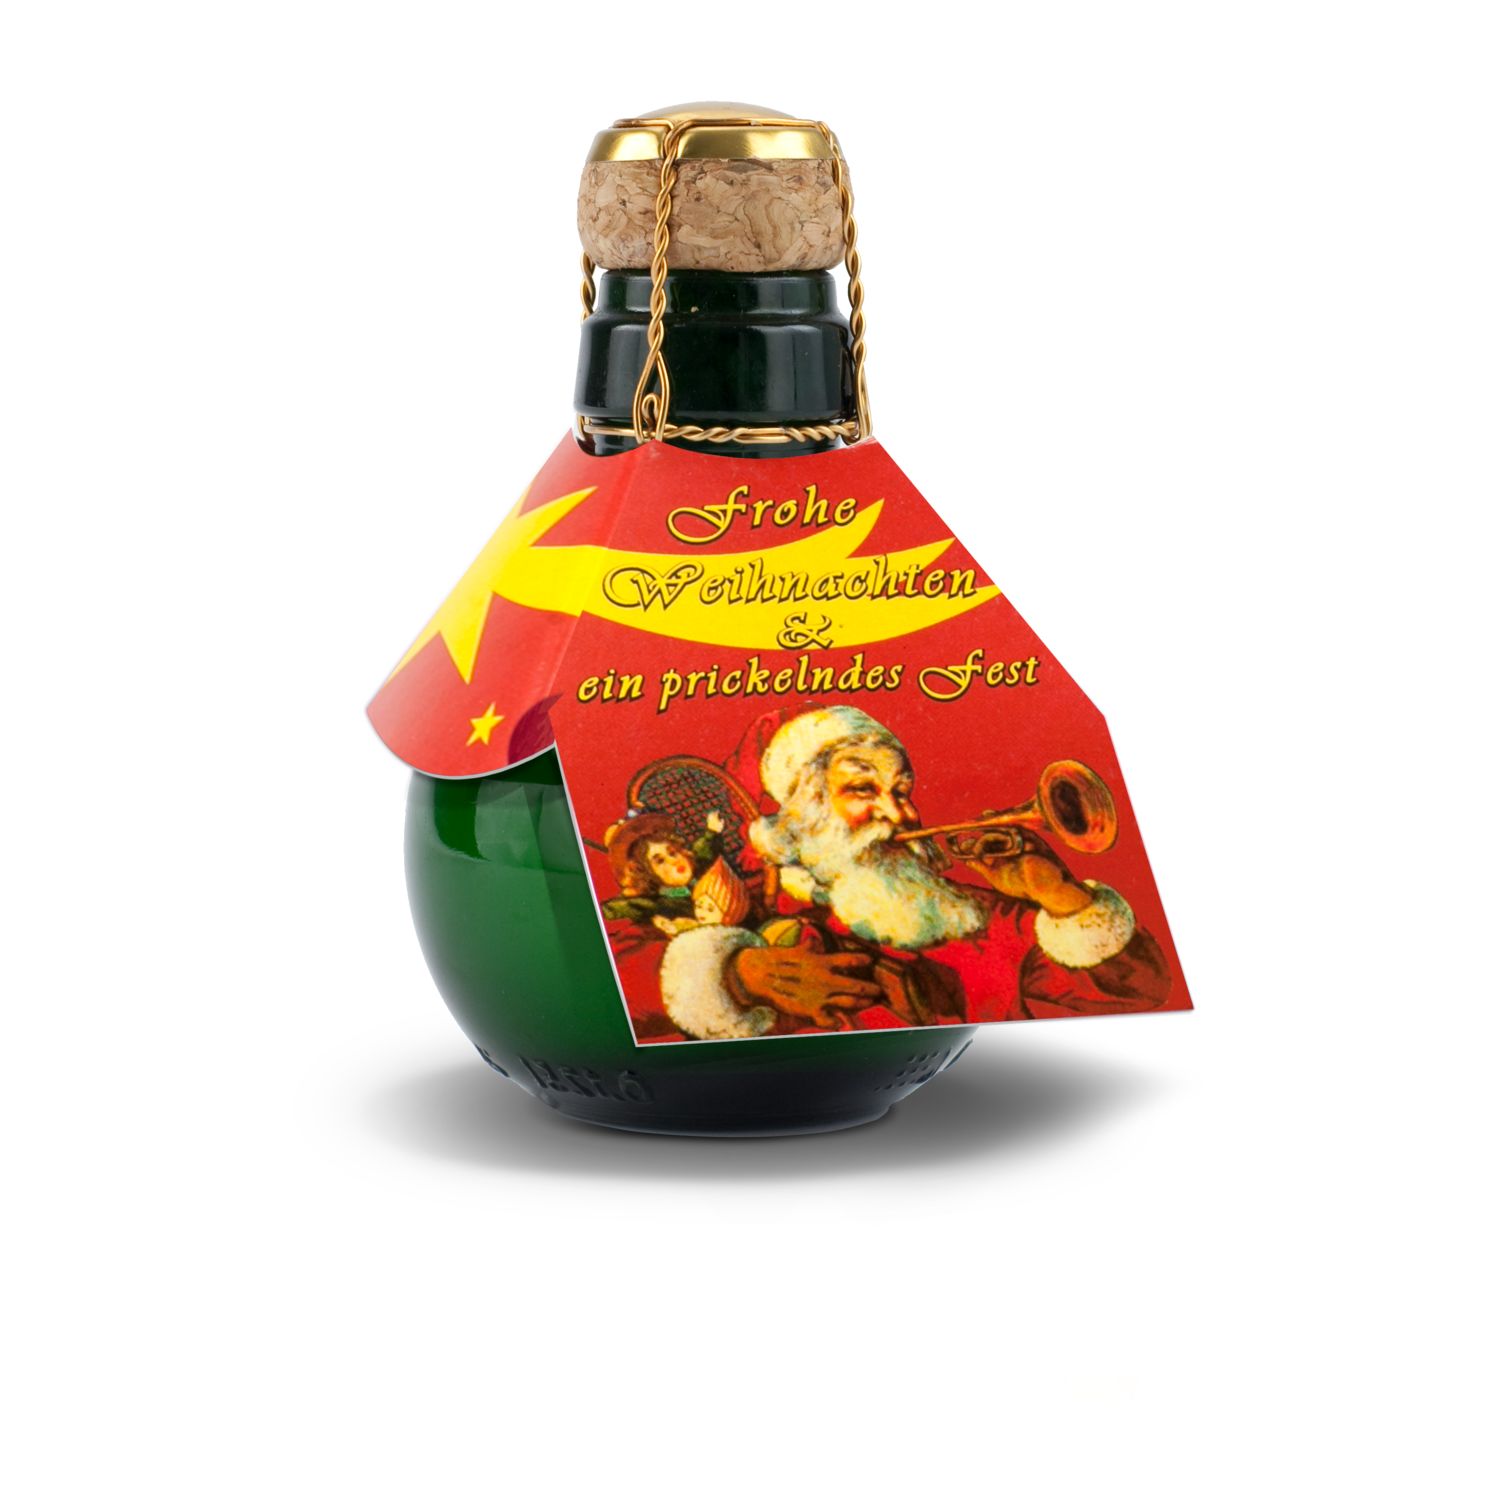 Geschenkartikel / Präsentartikel: Kleinste Sektflasche: Weihnachtsgruß